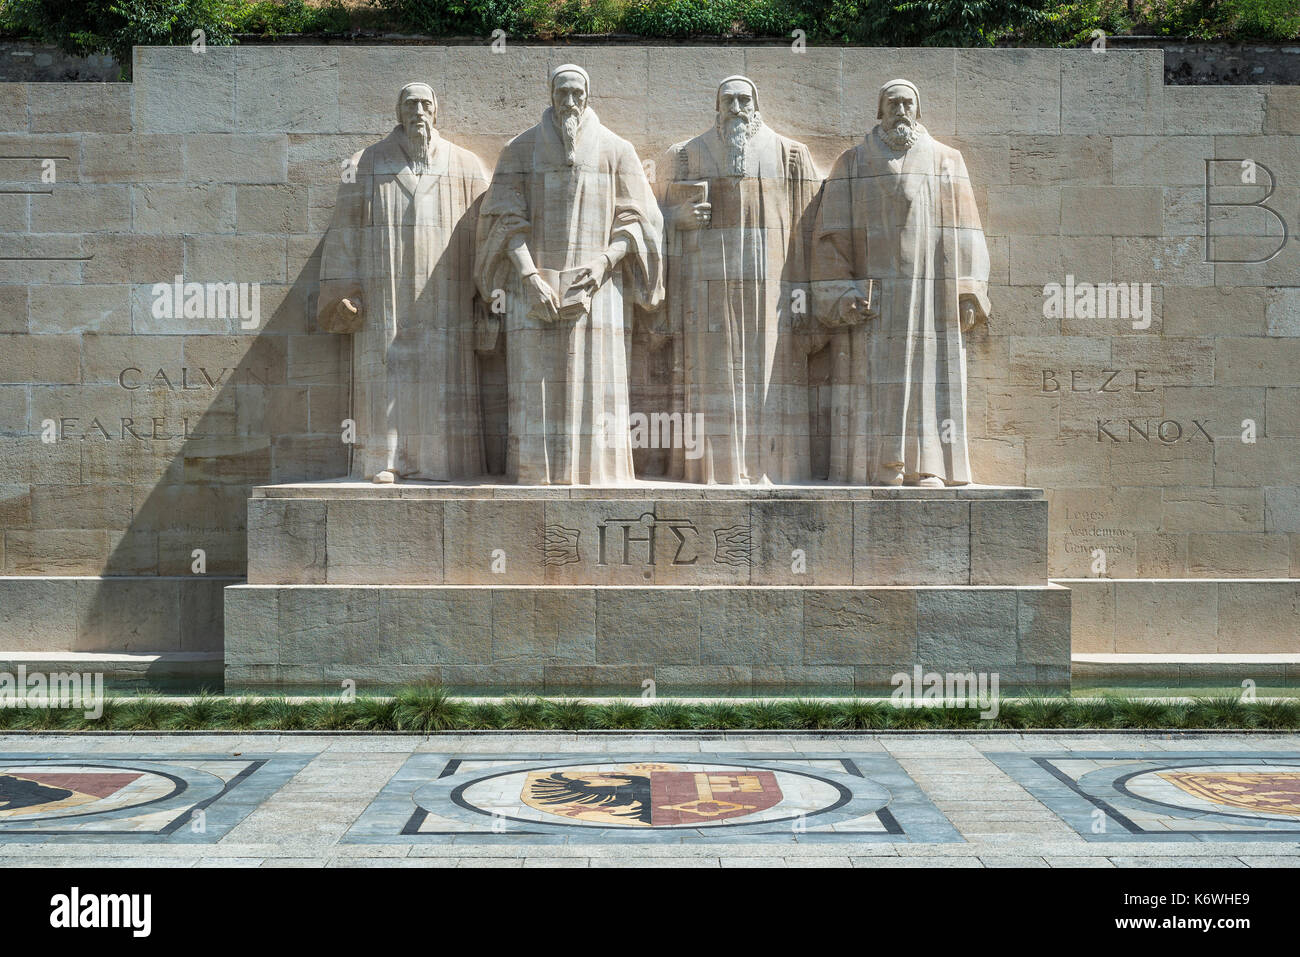 Die reformatoren Farel, Calvin, Beza und Knox (von links nach rechts), Skulpturen an der Internationalen Monument der Reformation Stockfoto